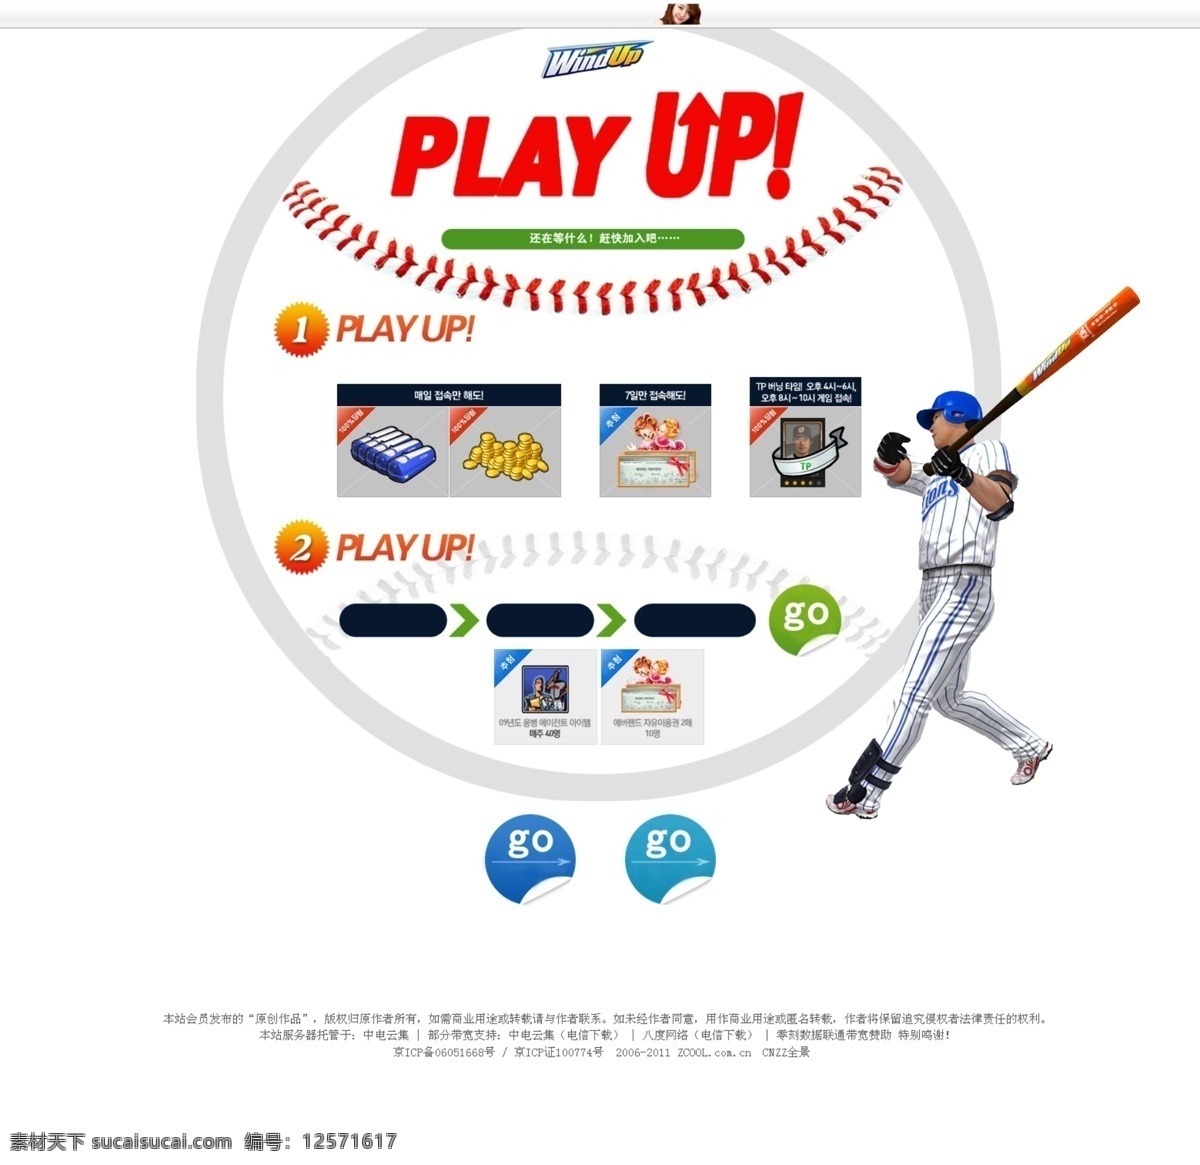 棒球网页设计 网页设计 网页 棒球 人物 条纹 导航条 韩国模板 网页模板 源文件